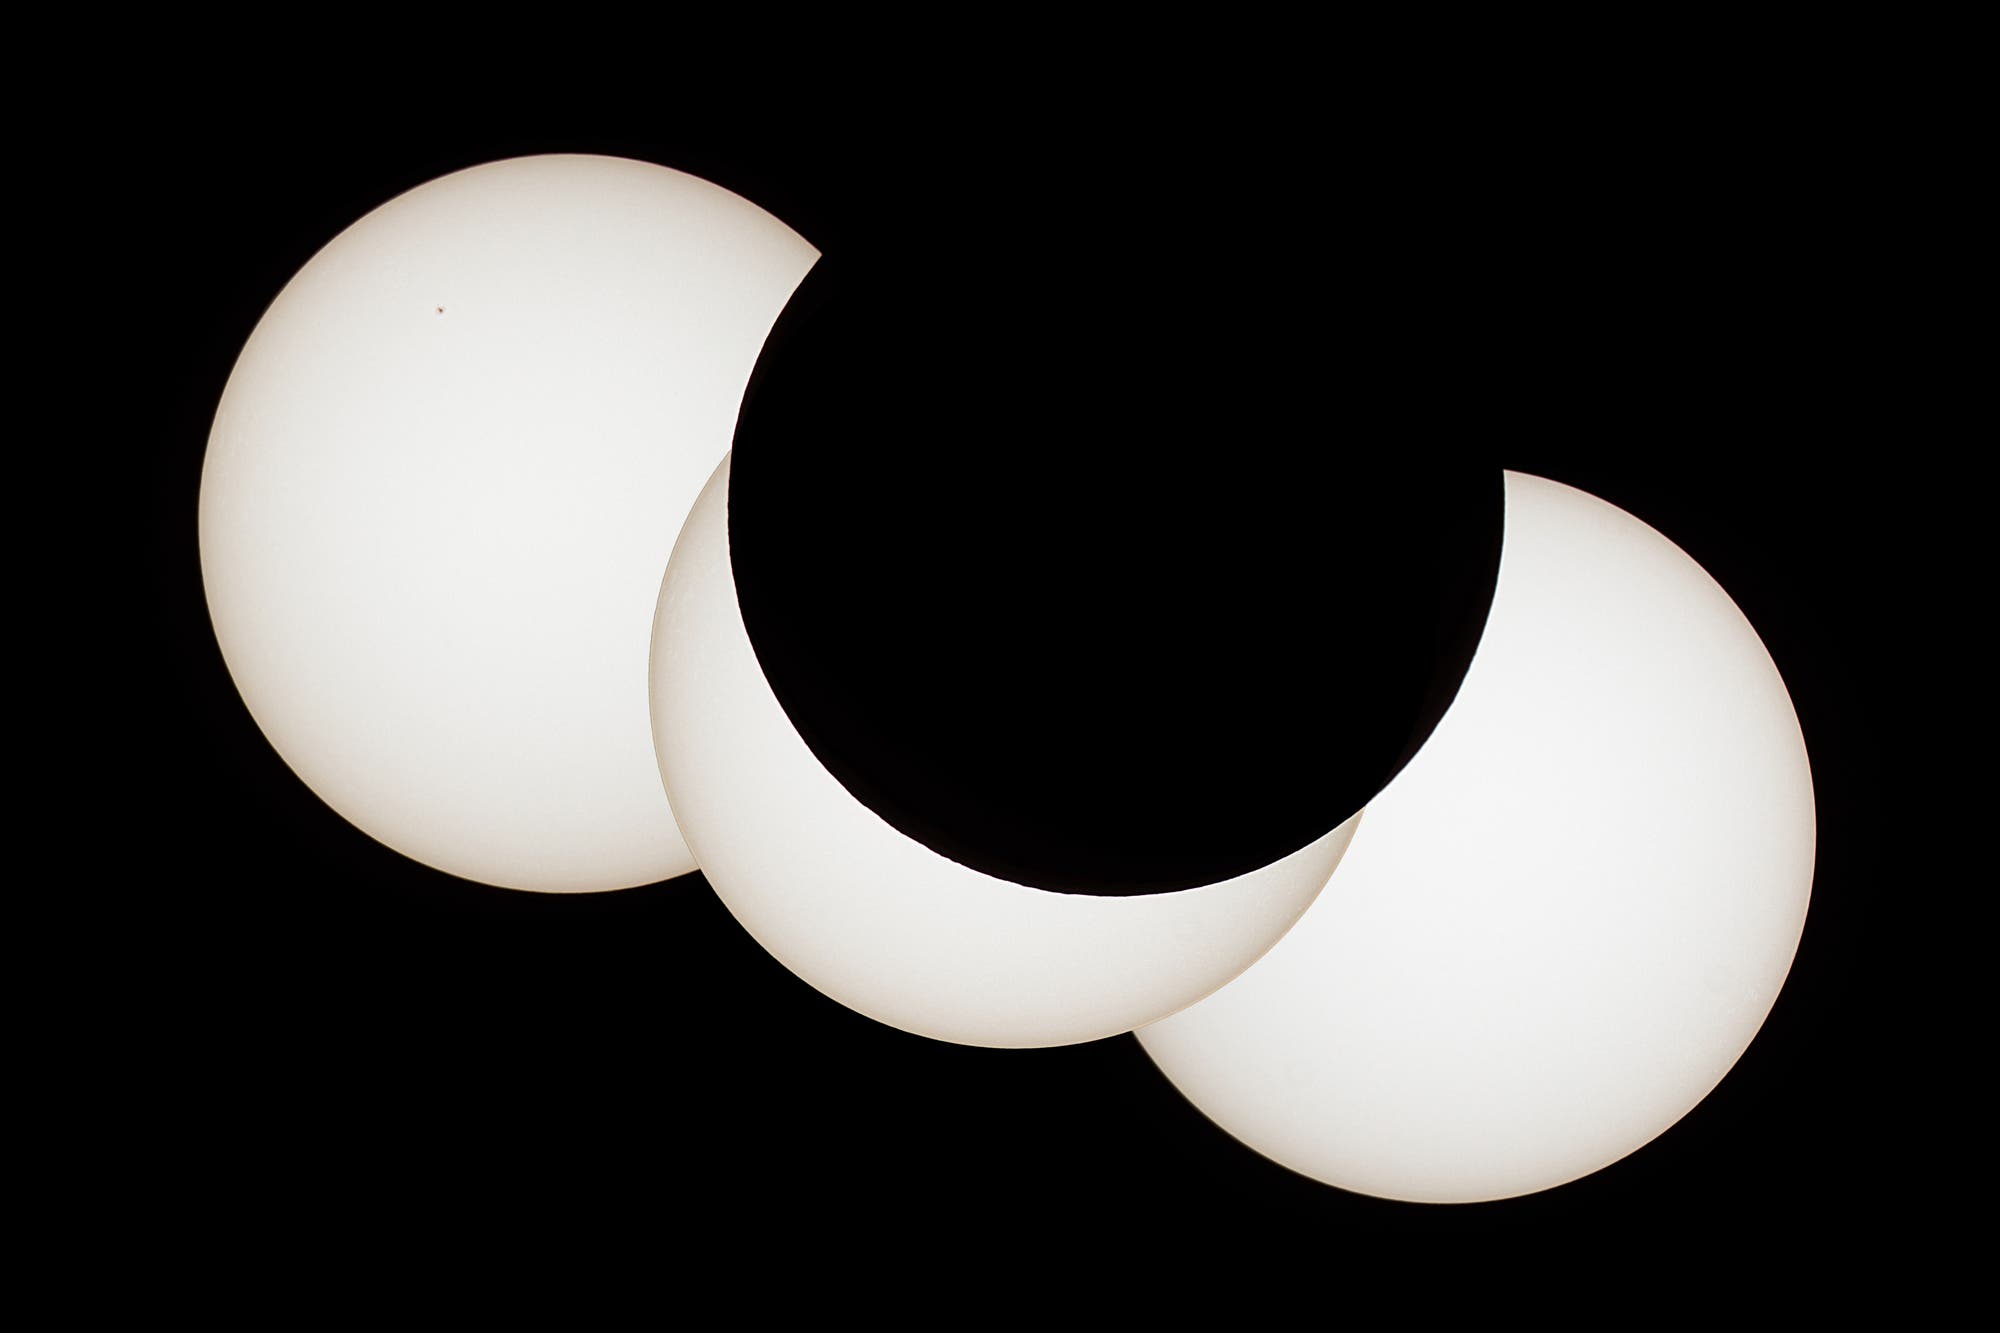 Mondrandprofil der Sonnenfinsternis vom 20. März 2015